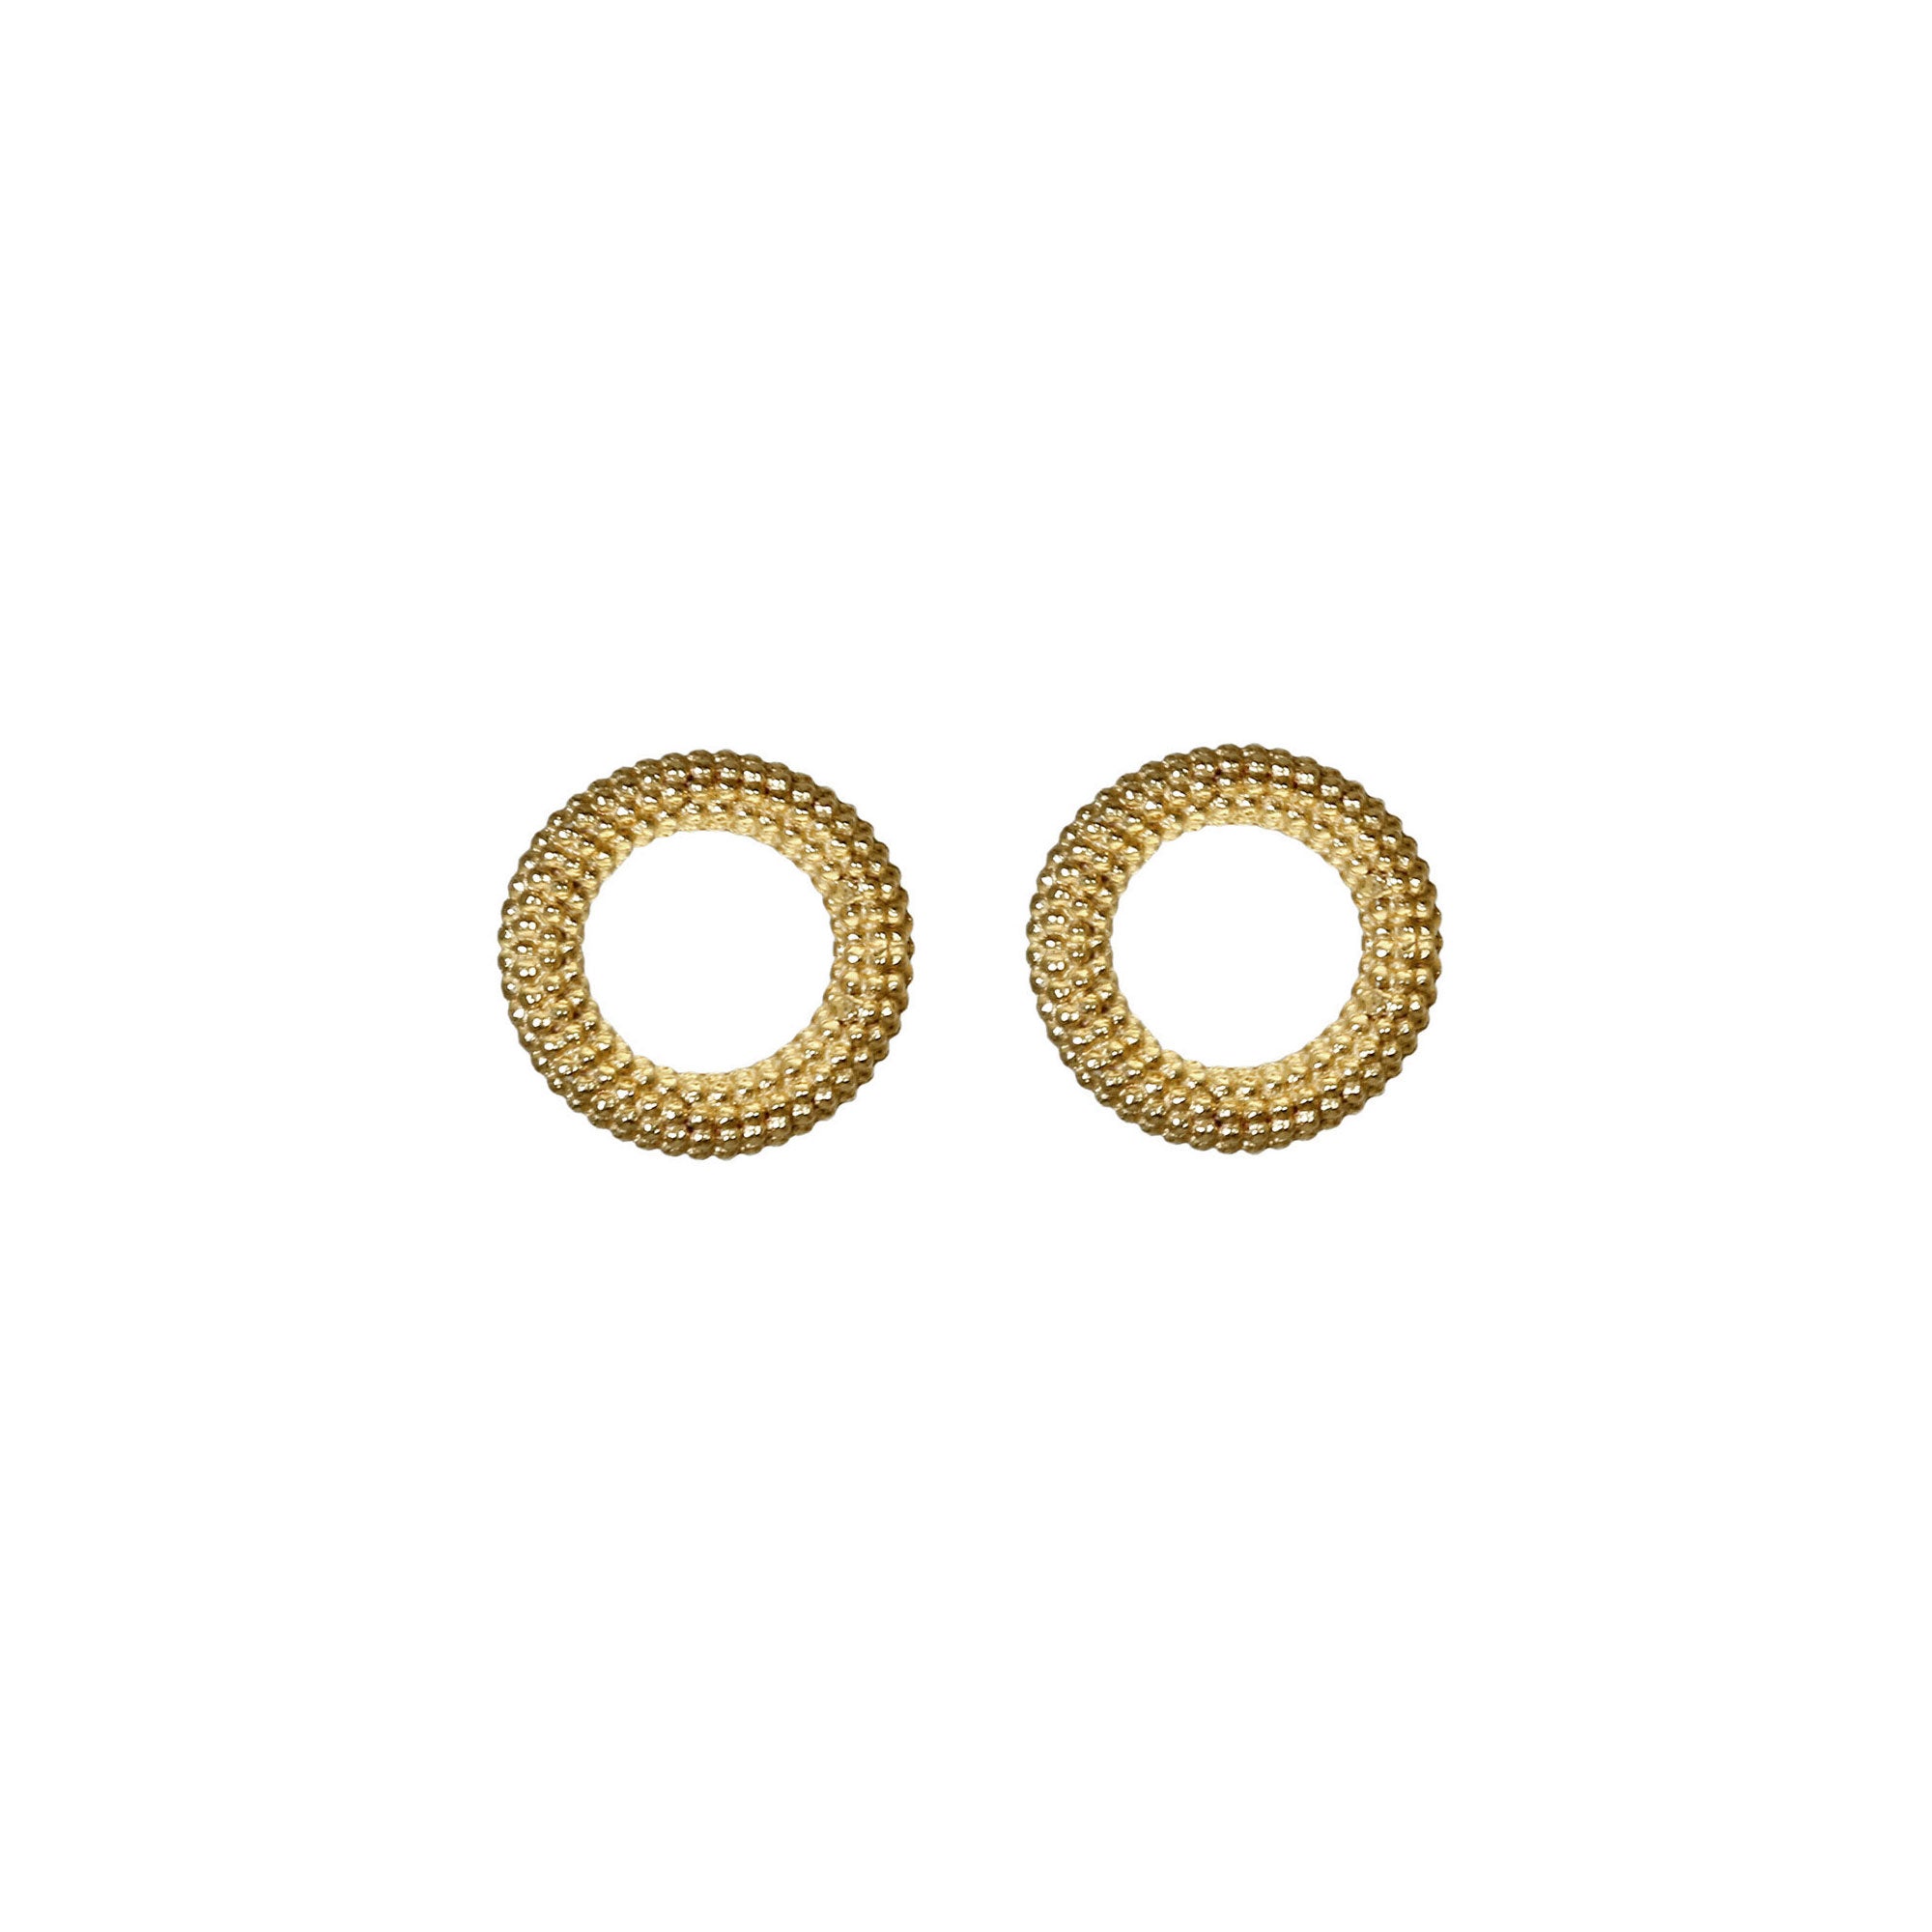 Tyro Circle Stud Earrings in yellow gold